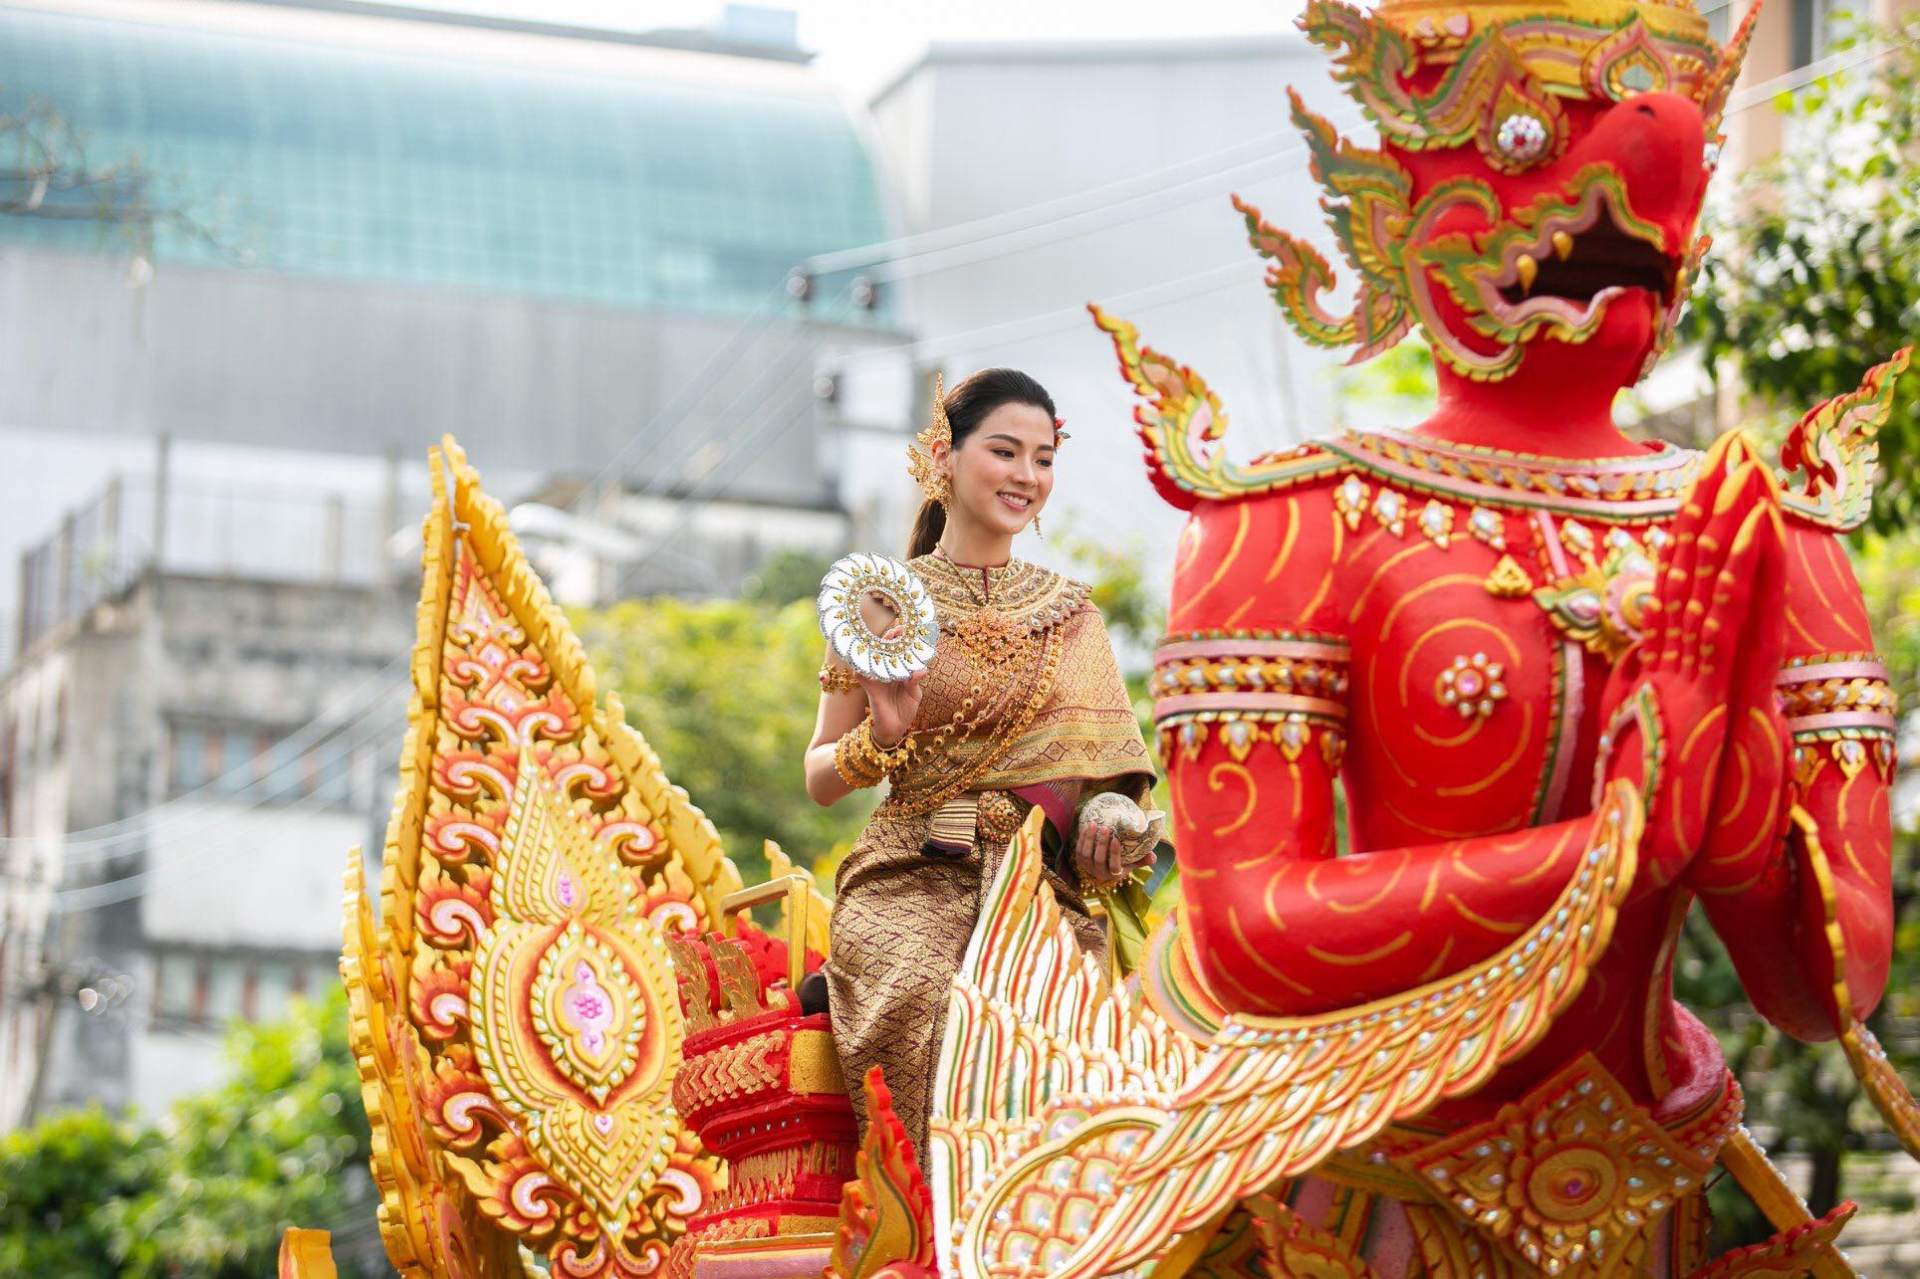 “Mỹ nhân Thái Lan” Baifern gây náo loạn với nhan sắc cực phẩm hóa thân thành “Nữ thần Songkran” 2023 - ảnh 10